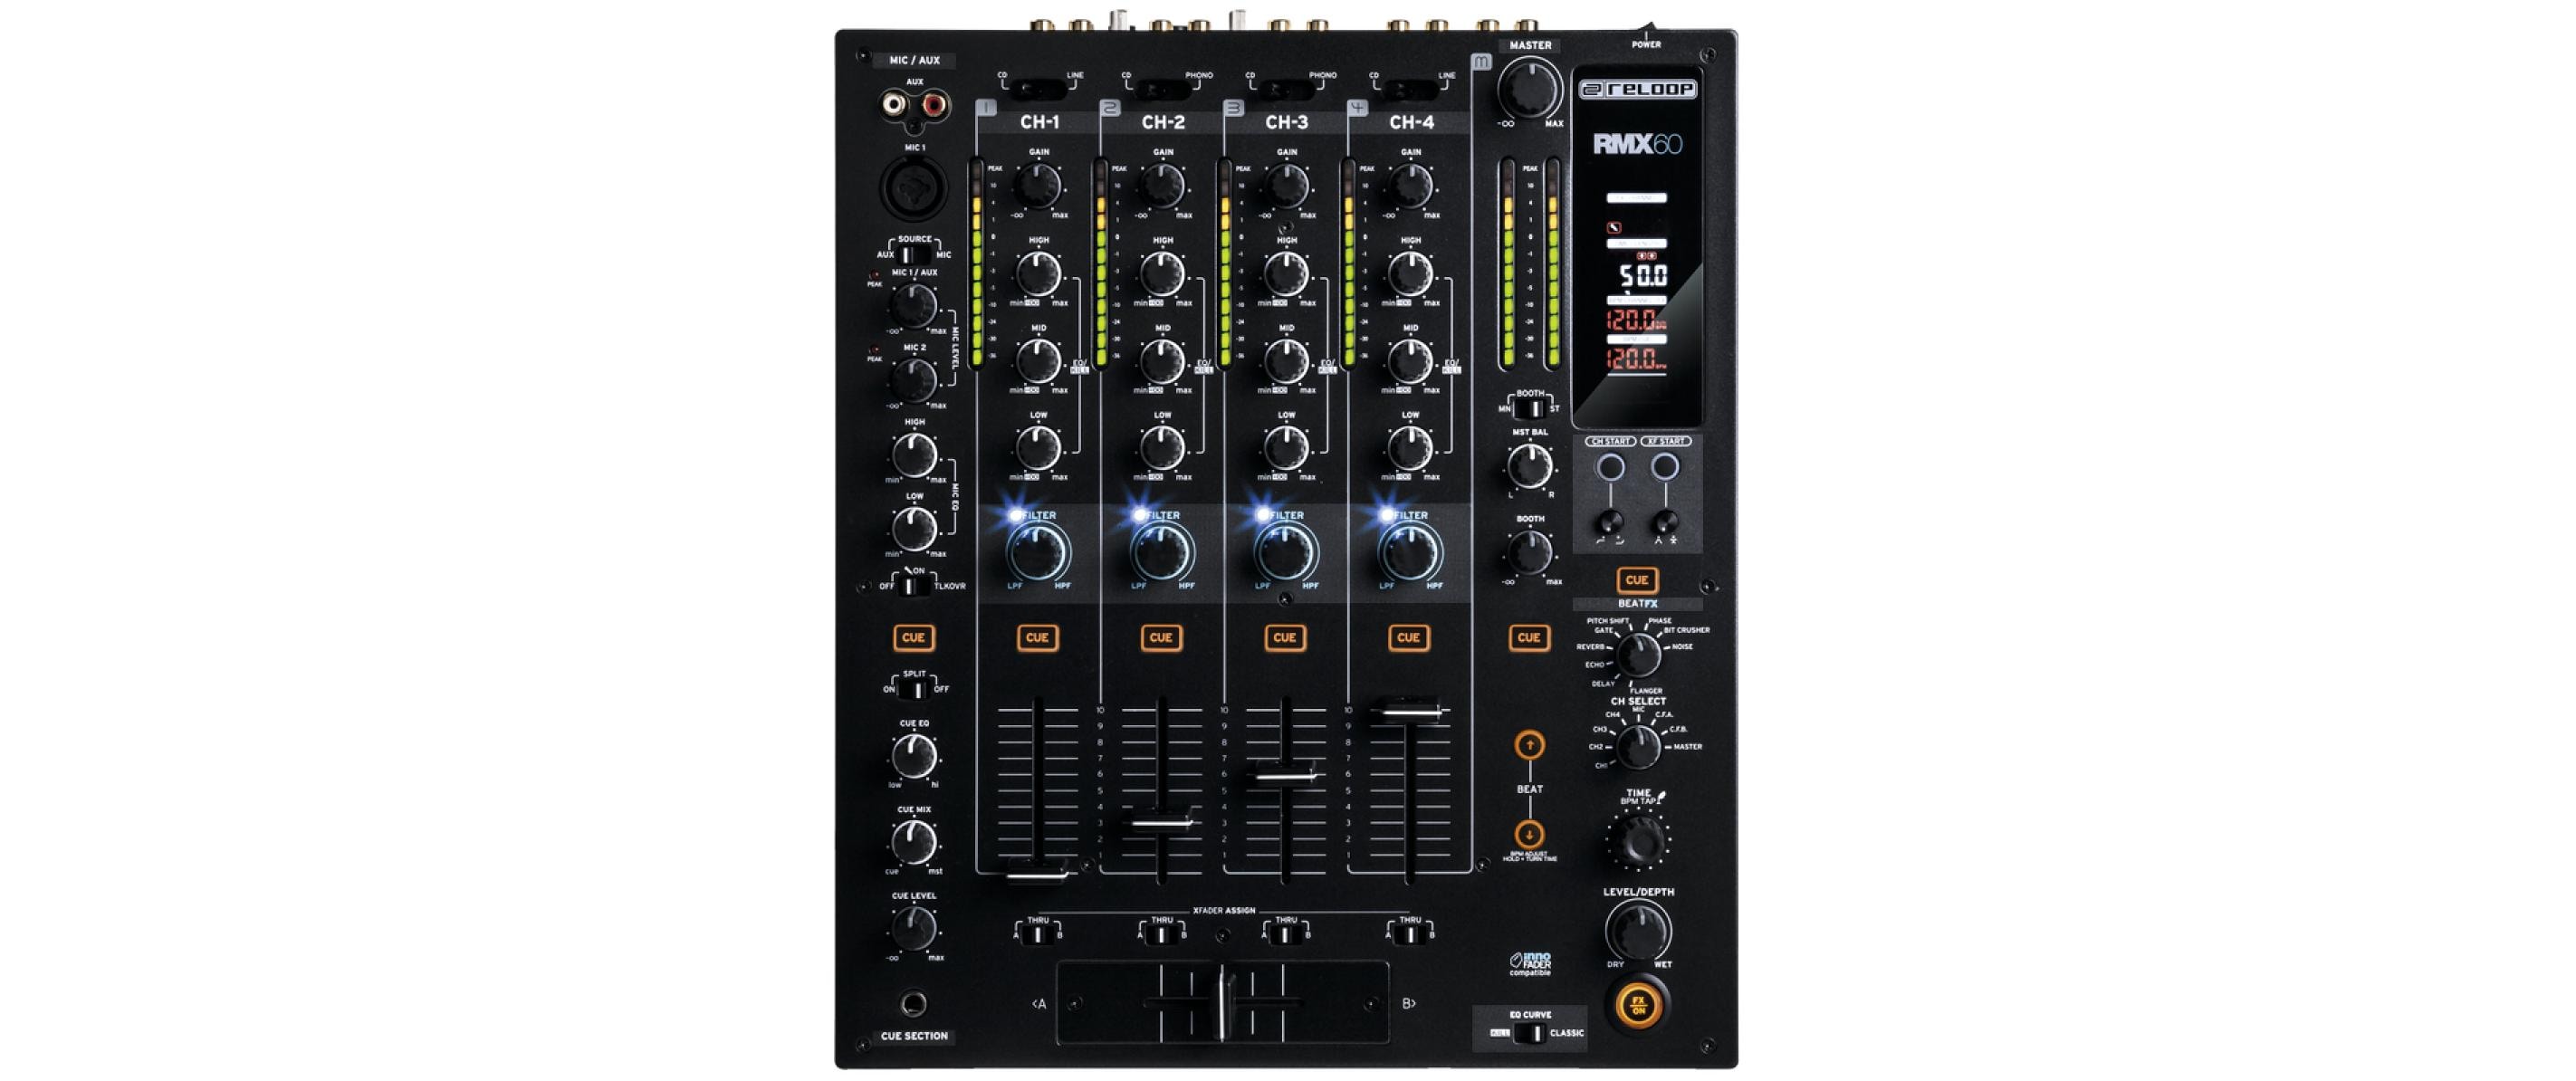 Reloop DJ-Mixer RMX-60 Digital